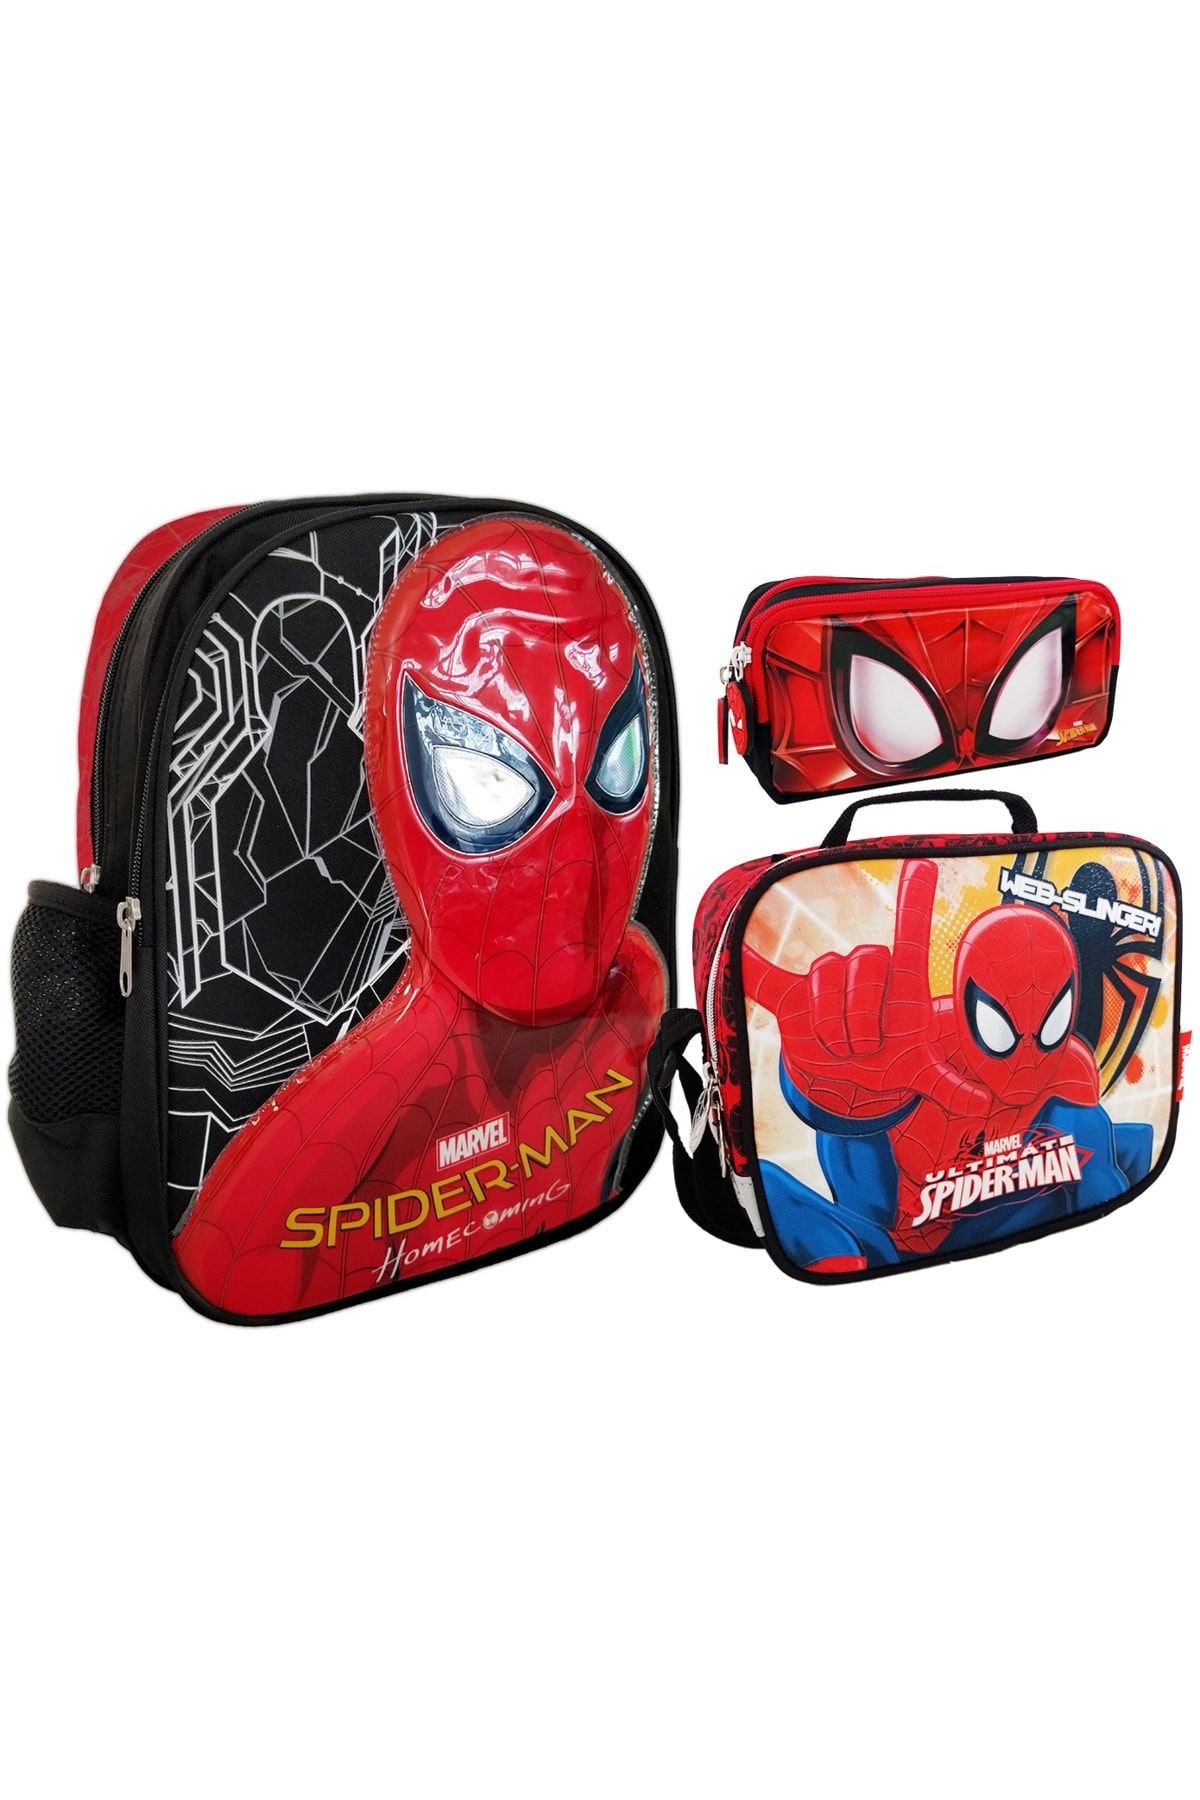 Hakan Çanta Spiderman Okul Sırt Çantası Beslenme Çantası Kalemlik Kalem Çantası 3'lü Set